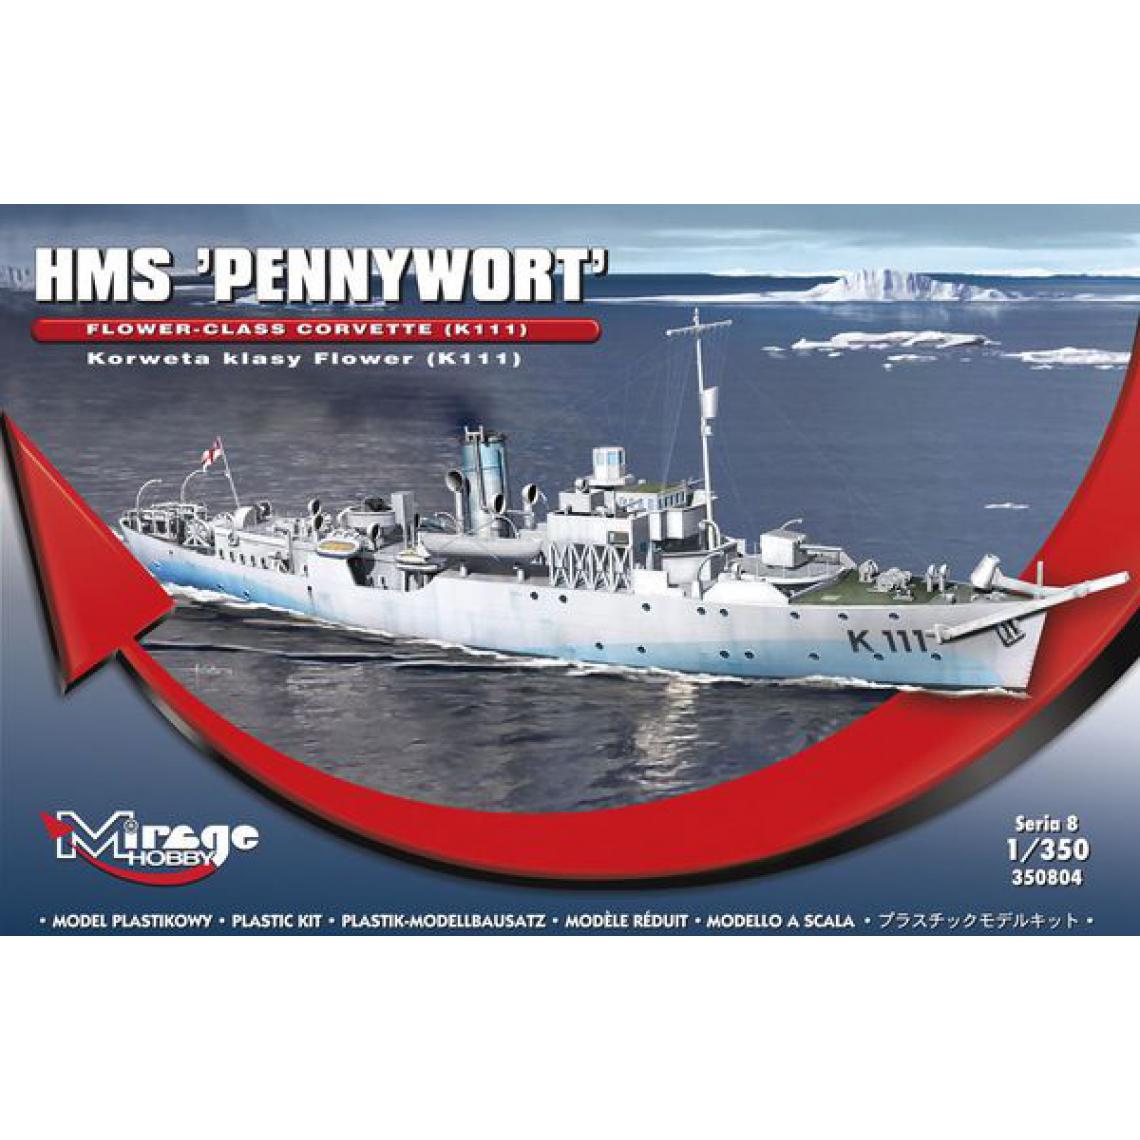 Mirage Hobby - HMS "PENNYWORT"Flower-Class CorvetteK111 - 1:350e - Mirage Hobby - Accessoires et pièces